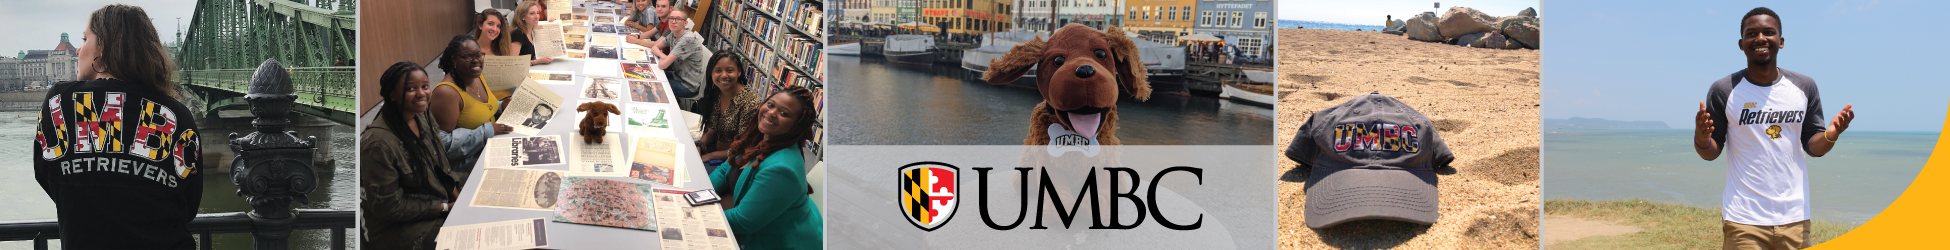 UMBC - University of Maryland, Baltimore County